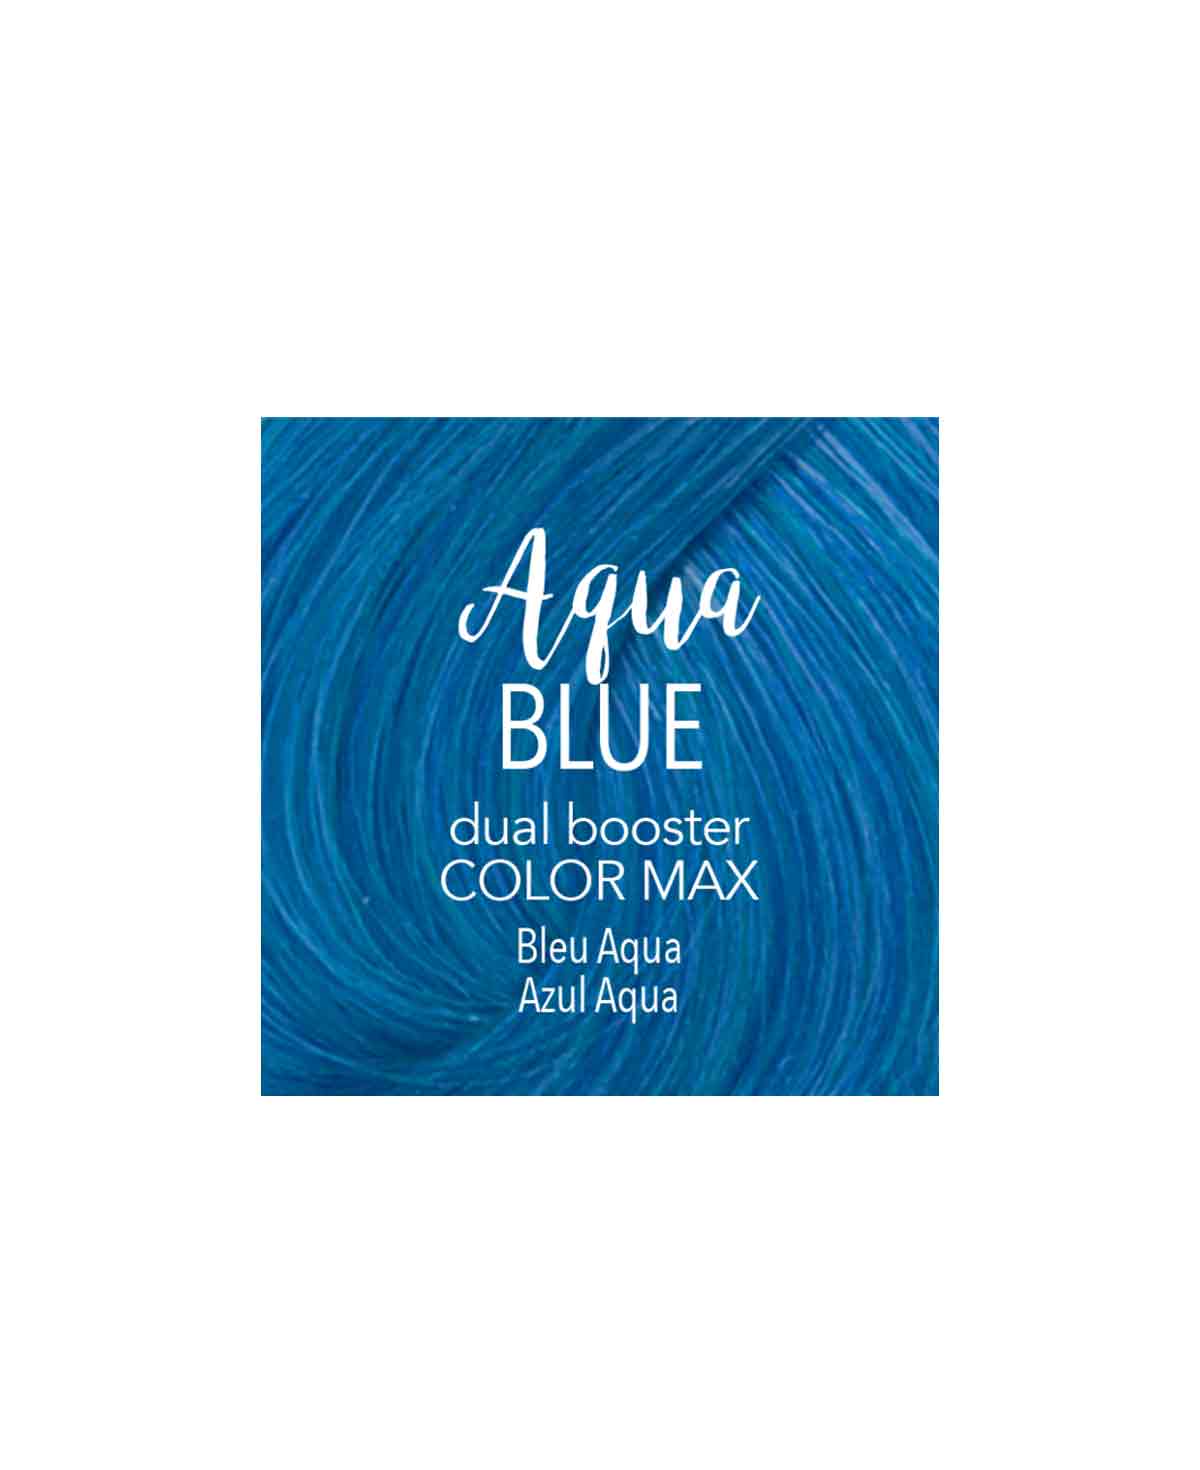 Mydentity - Dual Booster Aqua Blue 58g